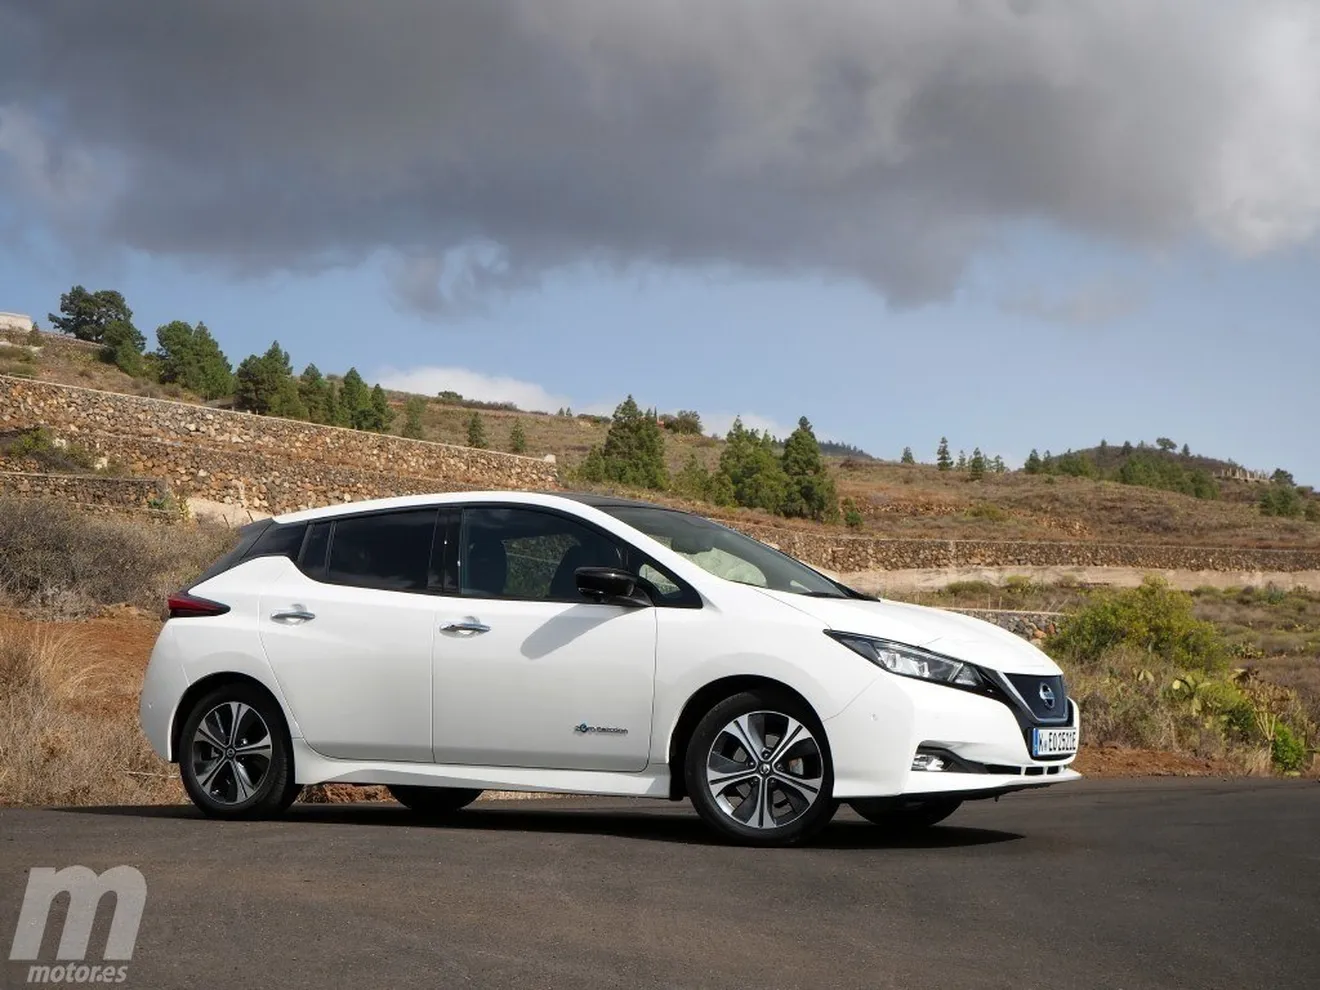 El Nissan Leaf aumentará su potencia hasta 160 kW y la autonomía a 362 kms desde finales de año